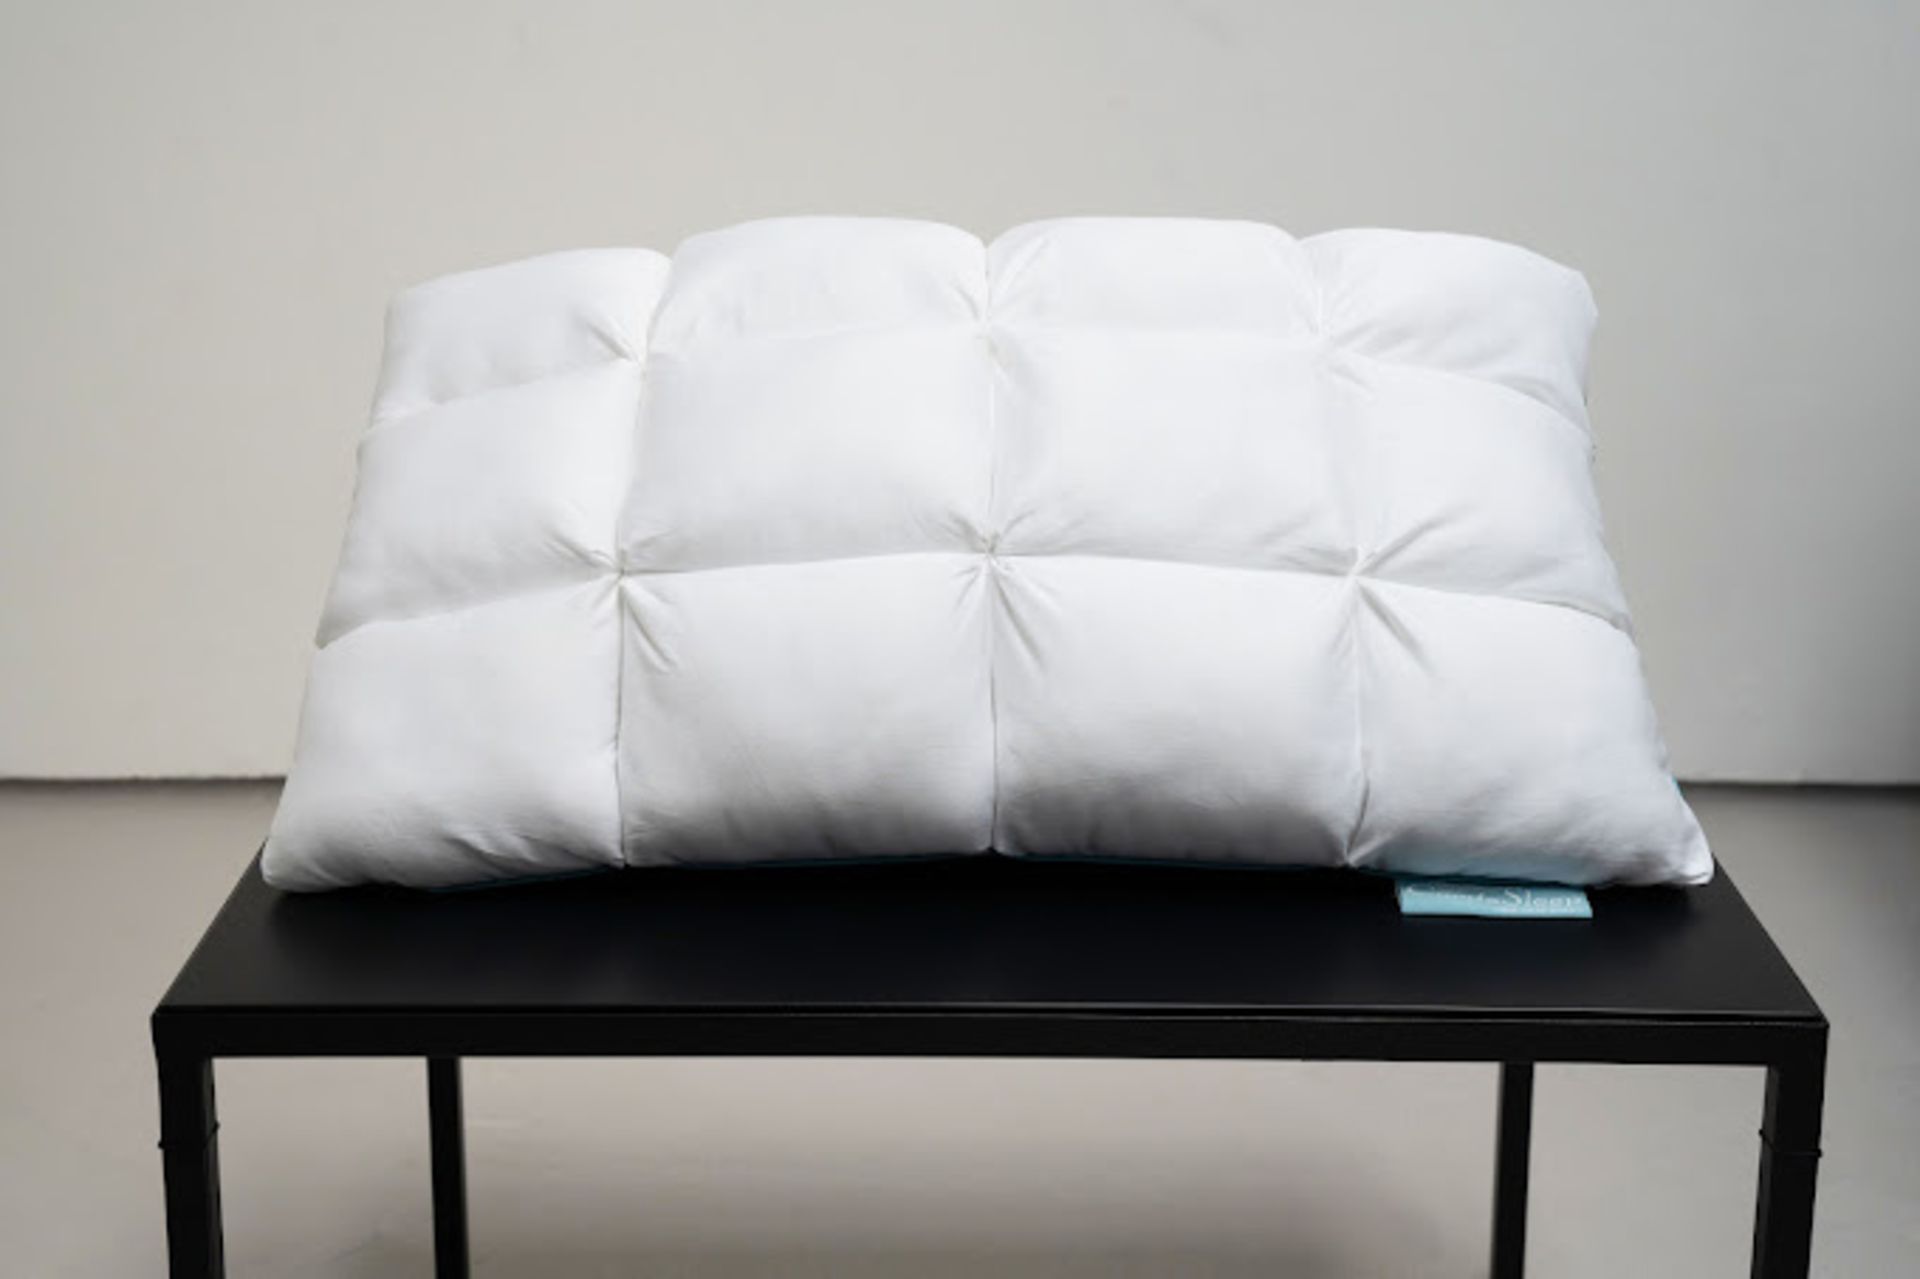 2 x ComfaSleep PL0001 Pillows